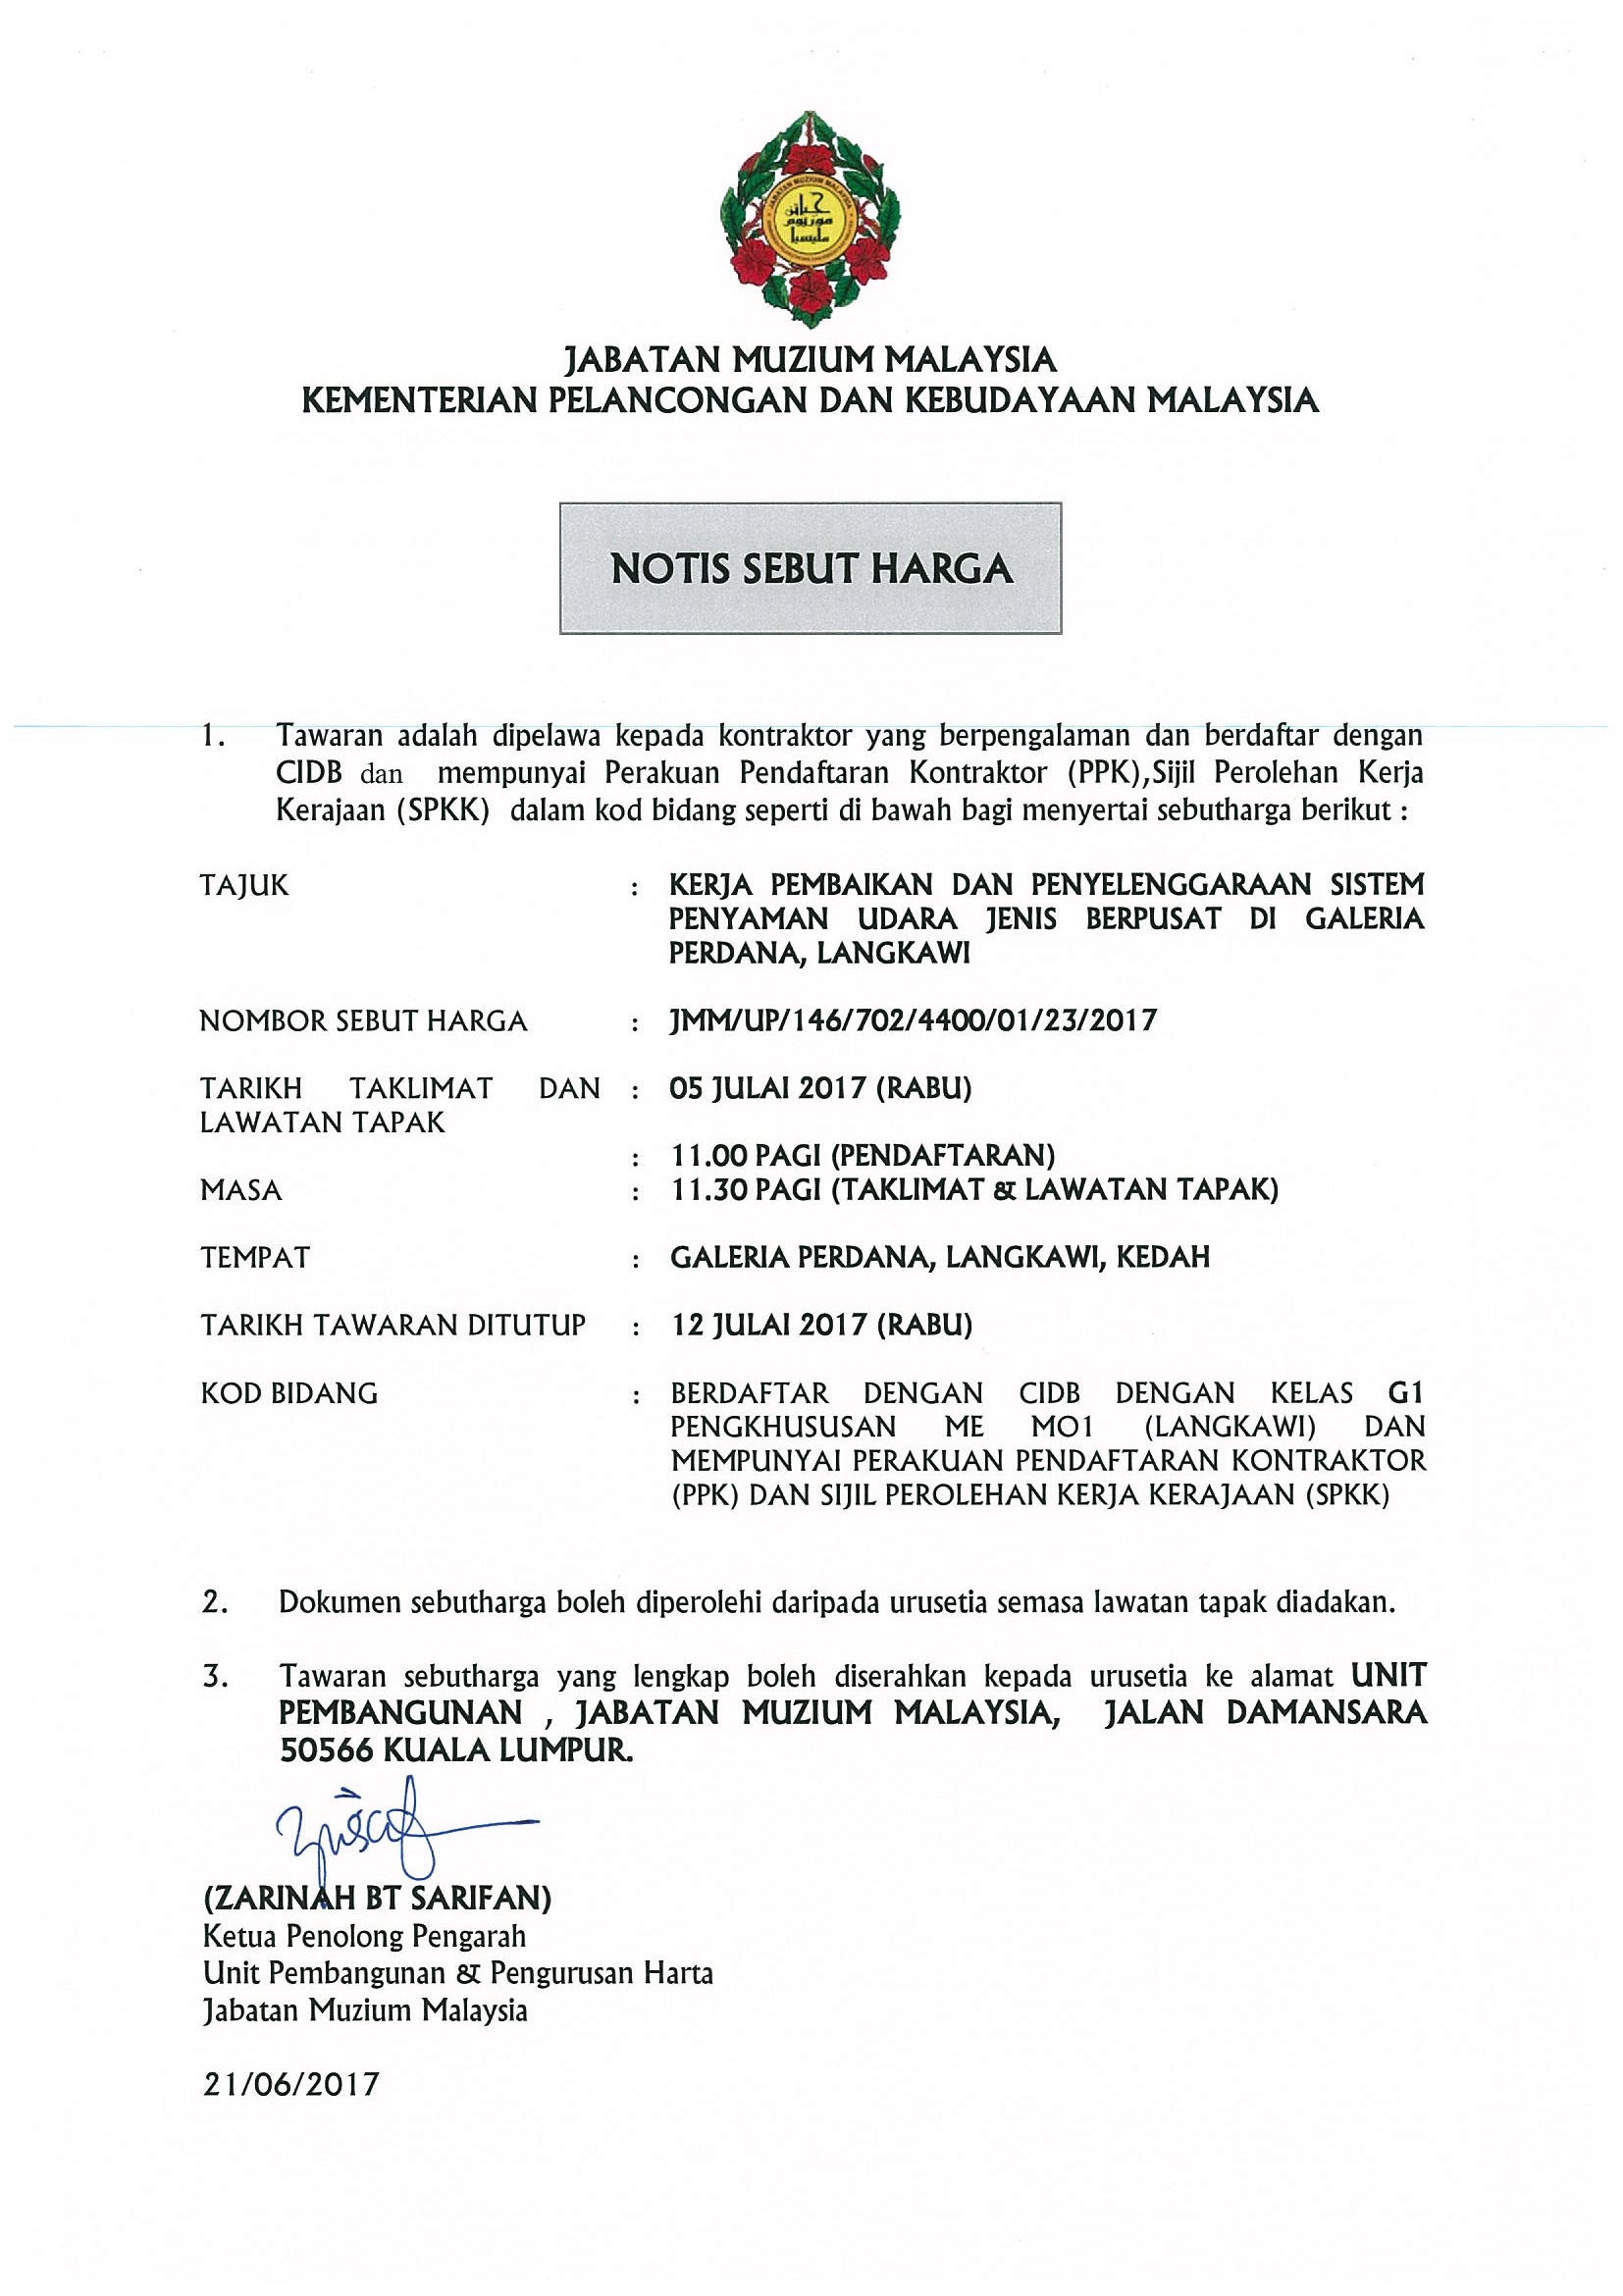 Notis Sebut Harga Kerja Pembaikan Dan Penyelenggaraan Sistem Penyaman Udara Jenis Berpusat Di Galeria Perdana Langkawi Jabatan Muzium Malaysia